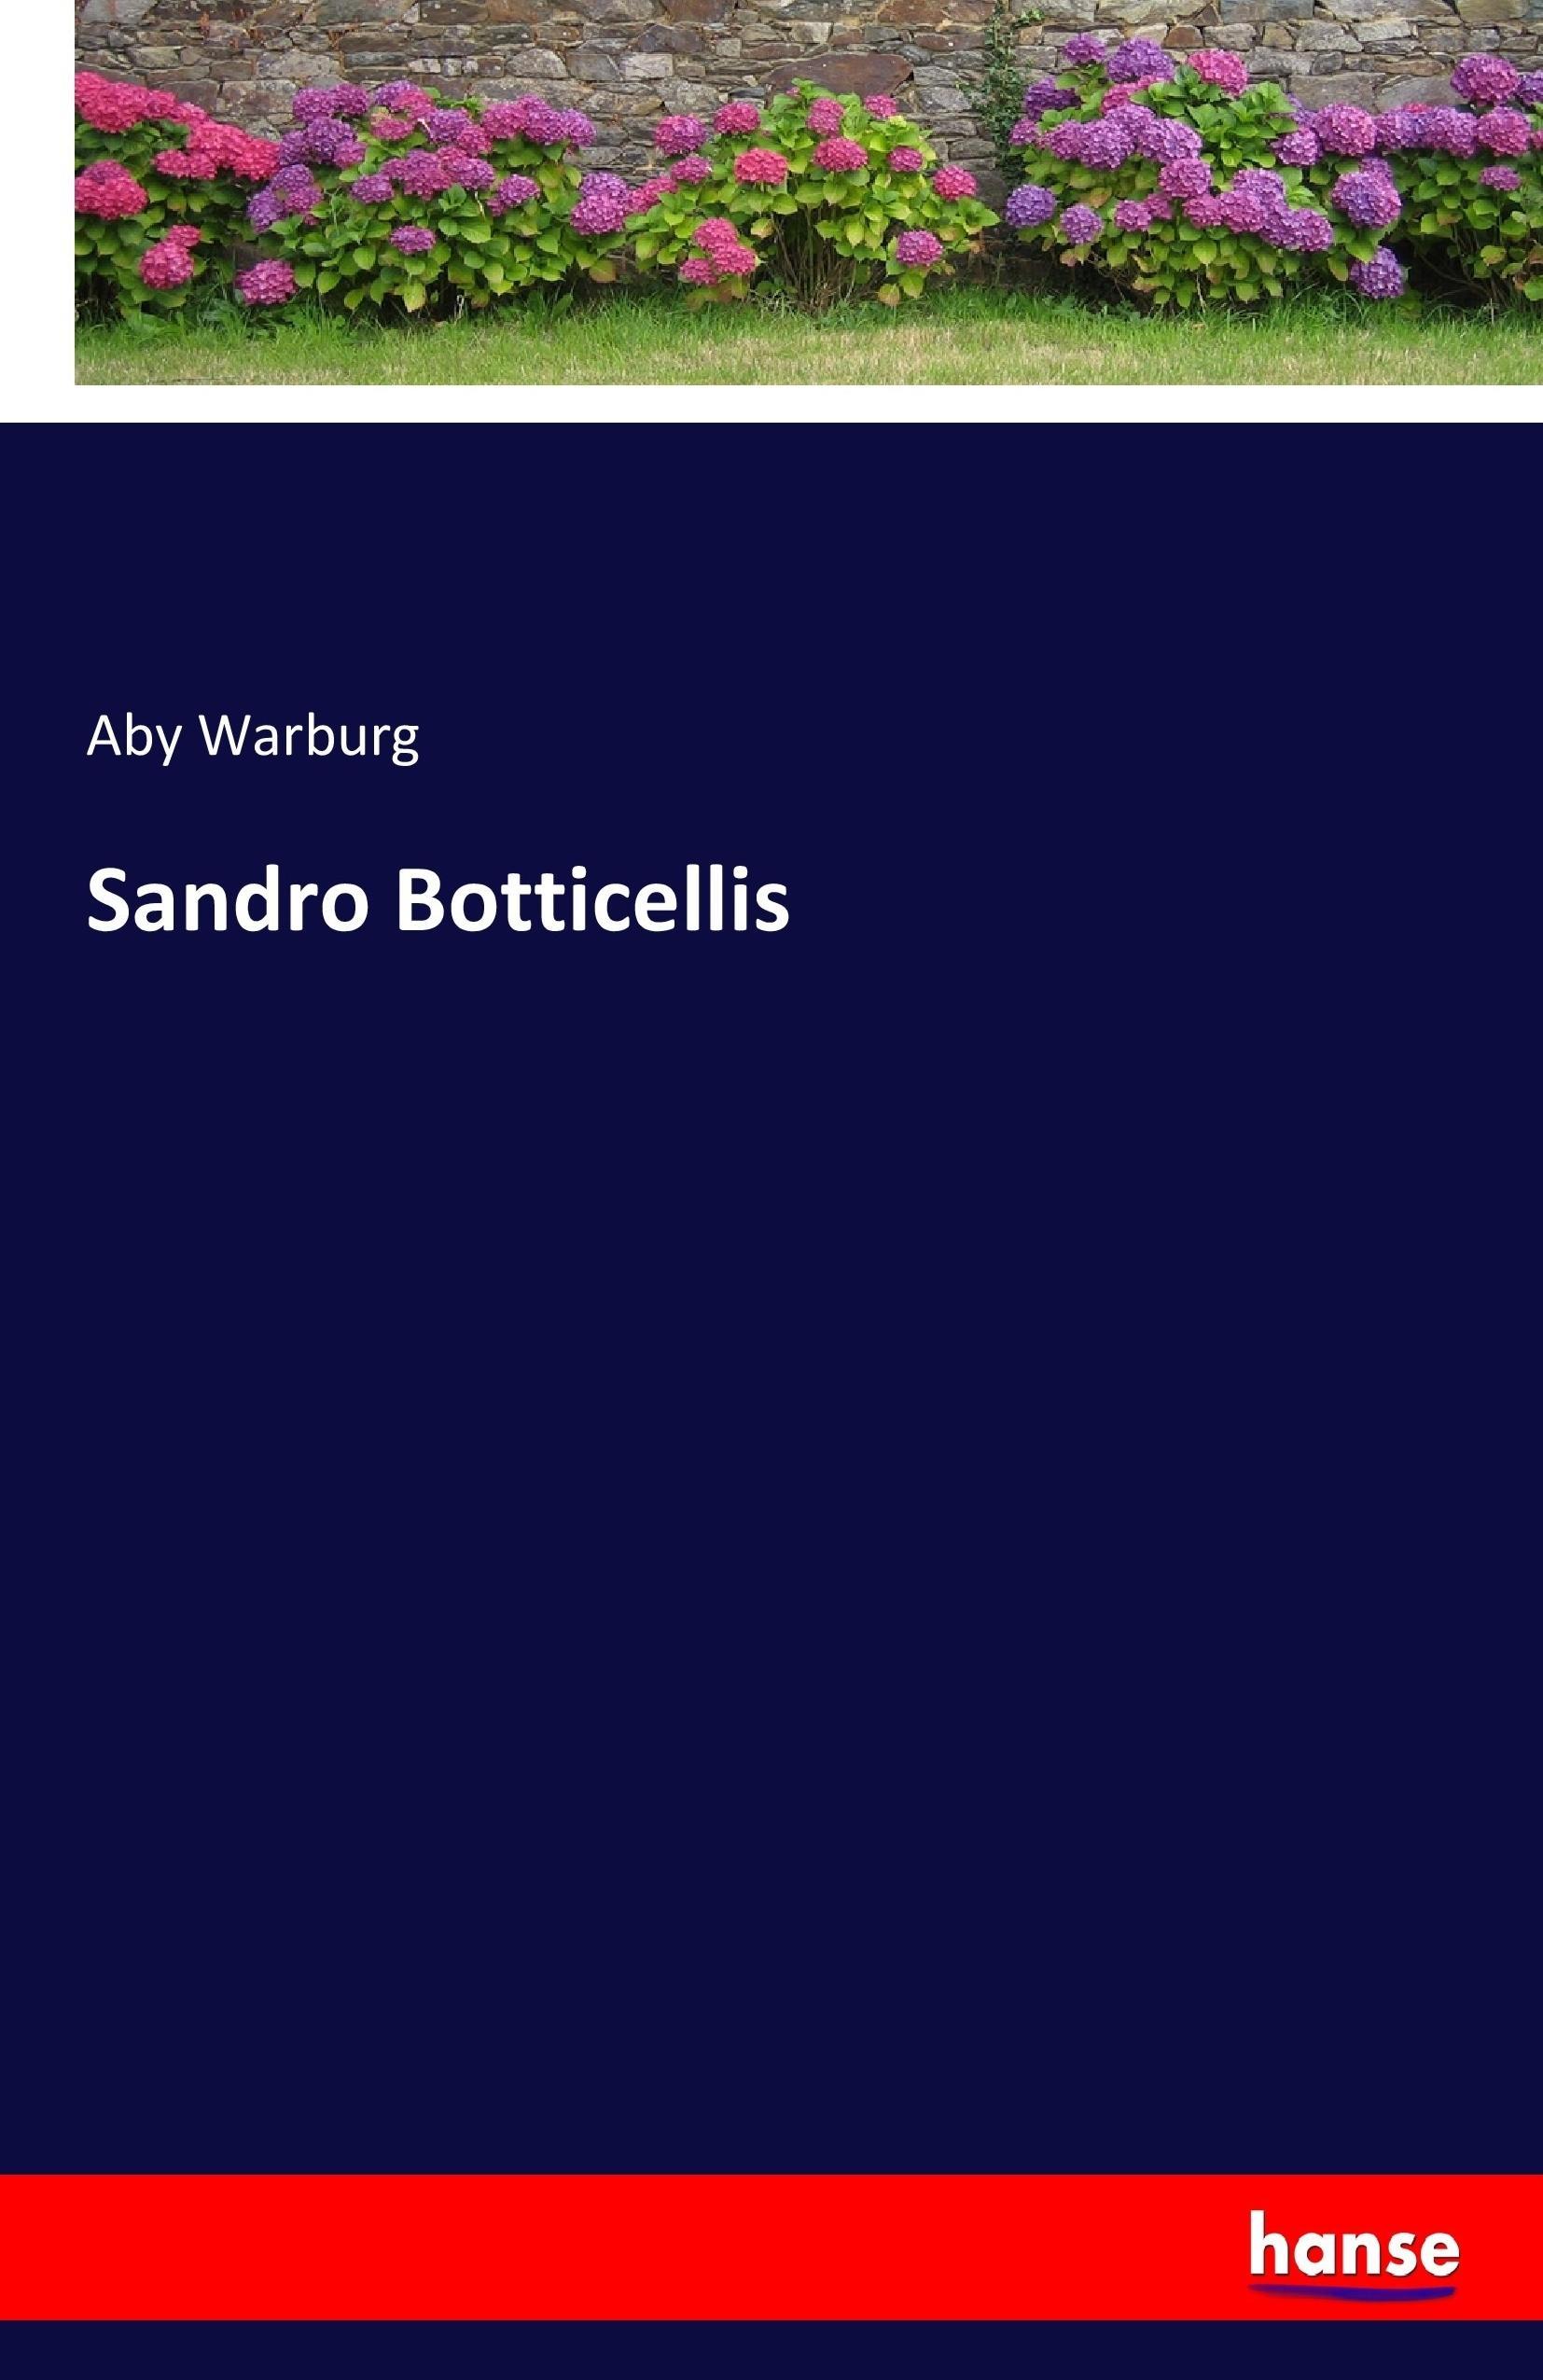 Sandro Botticellis Aby Warburg - Afbeelding 1 van 1